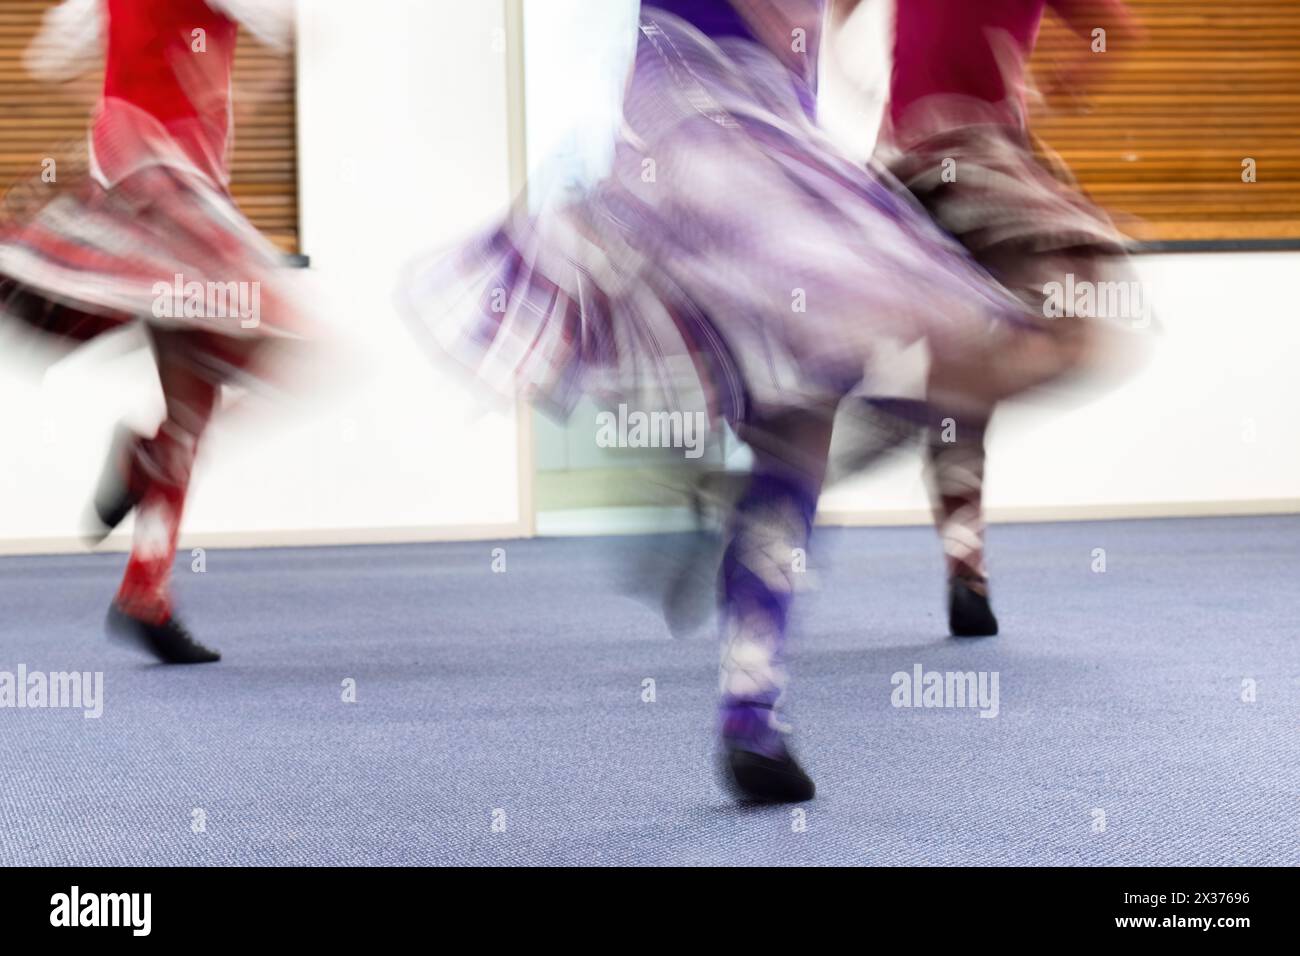 Des jeunes filles appréciant la danse des Highlands dans un club de danse. Flou de mouvement de belles jupes volantes capturées dans l'appareil photo en utilisant la vitesse d'obturation lente. Banque D'Images